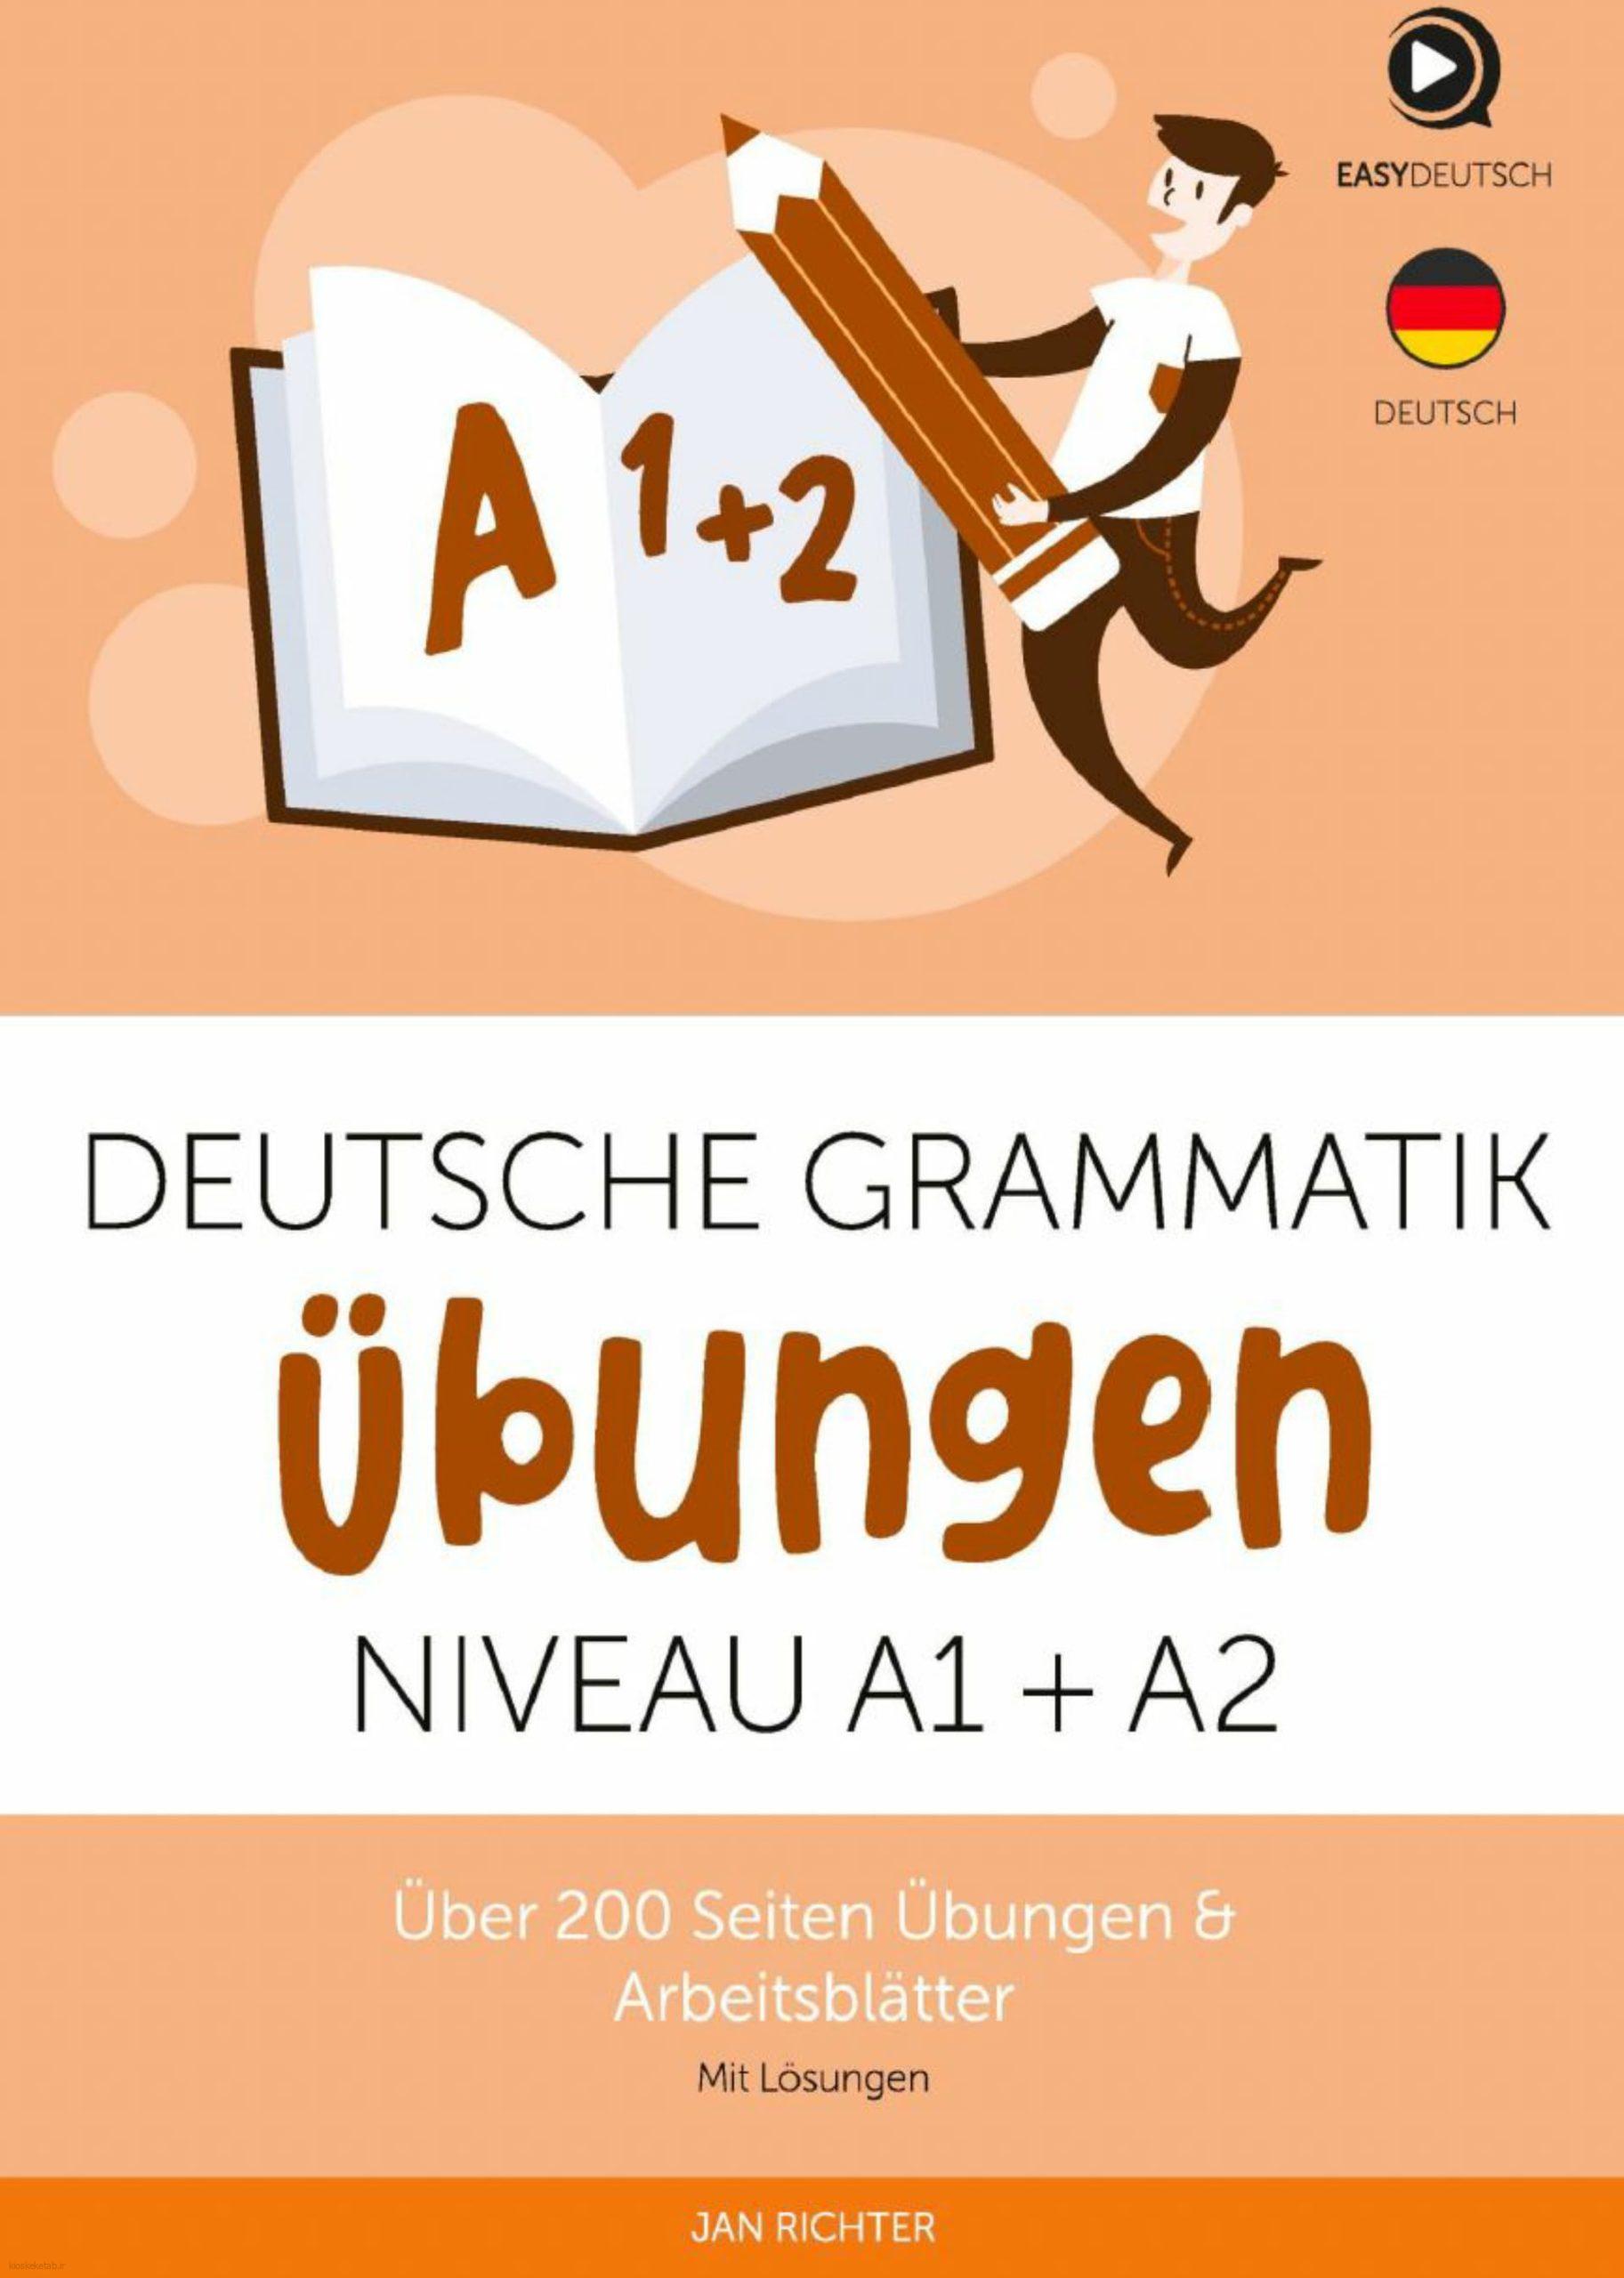 دانلود کتاب آلمانیdeutsche grammatik übungen niveau a1 a2